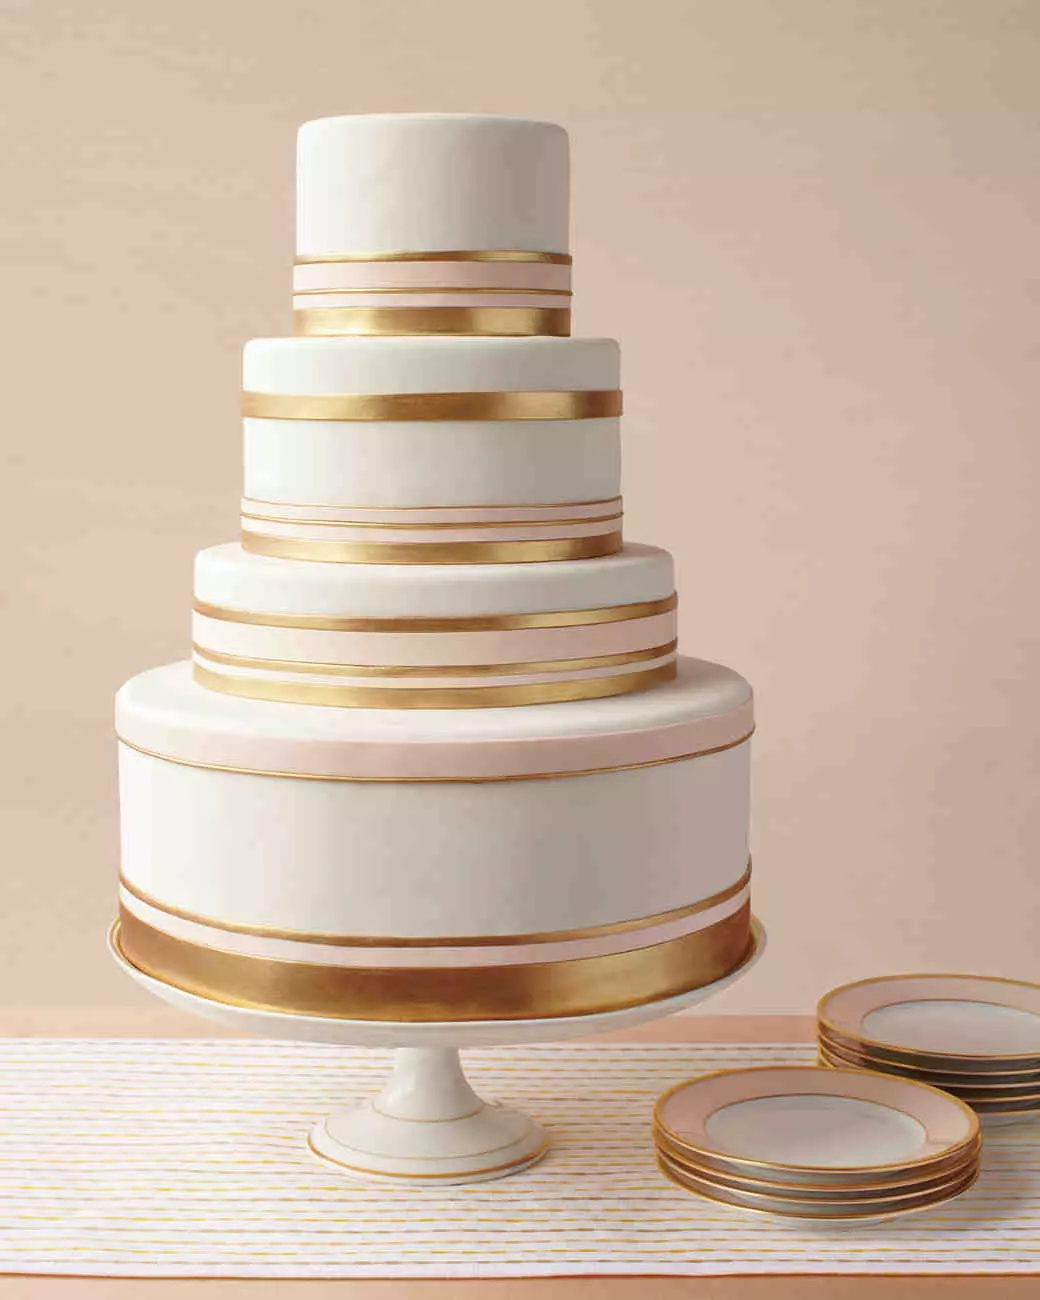 गोल्डन शादी (16 तस्वीरें): एक साथ रहने के 50 साल, शादी की सालगिरह पर केक की सजावट चुनें 19007_16